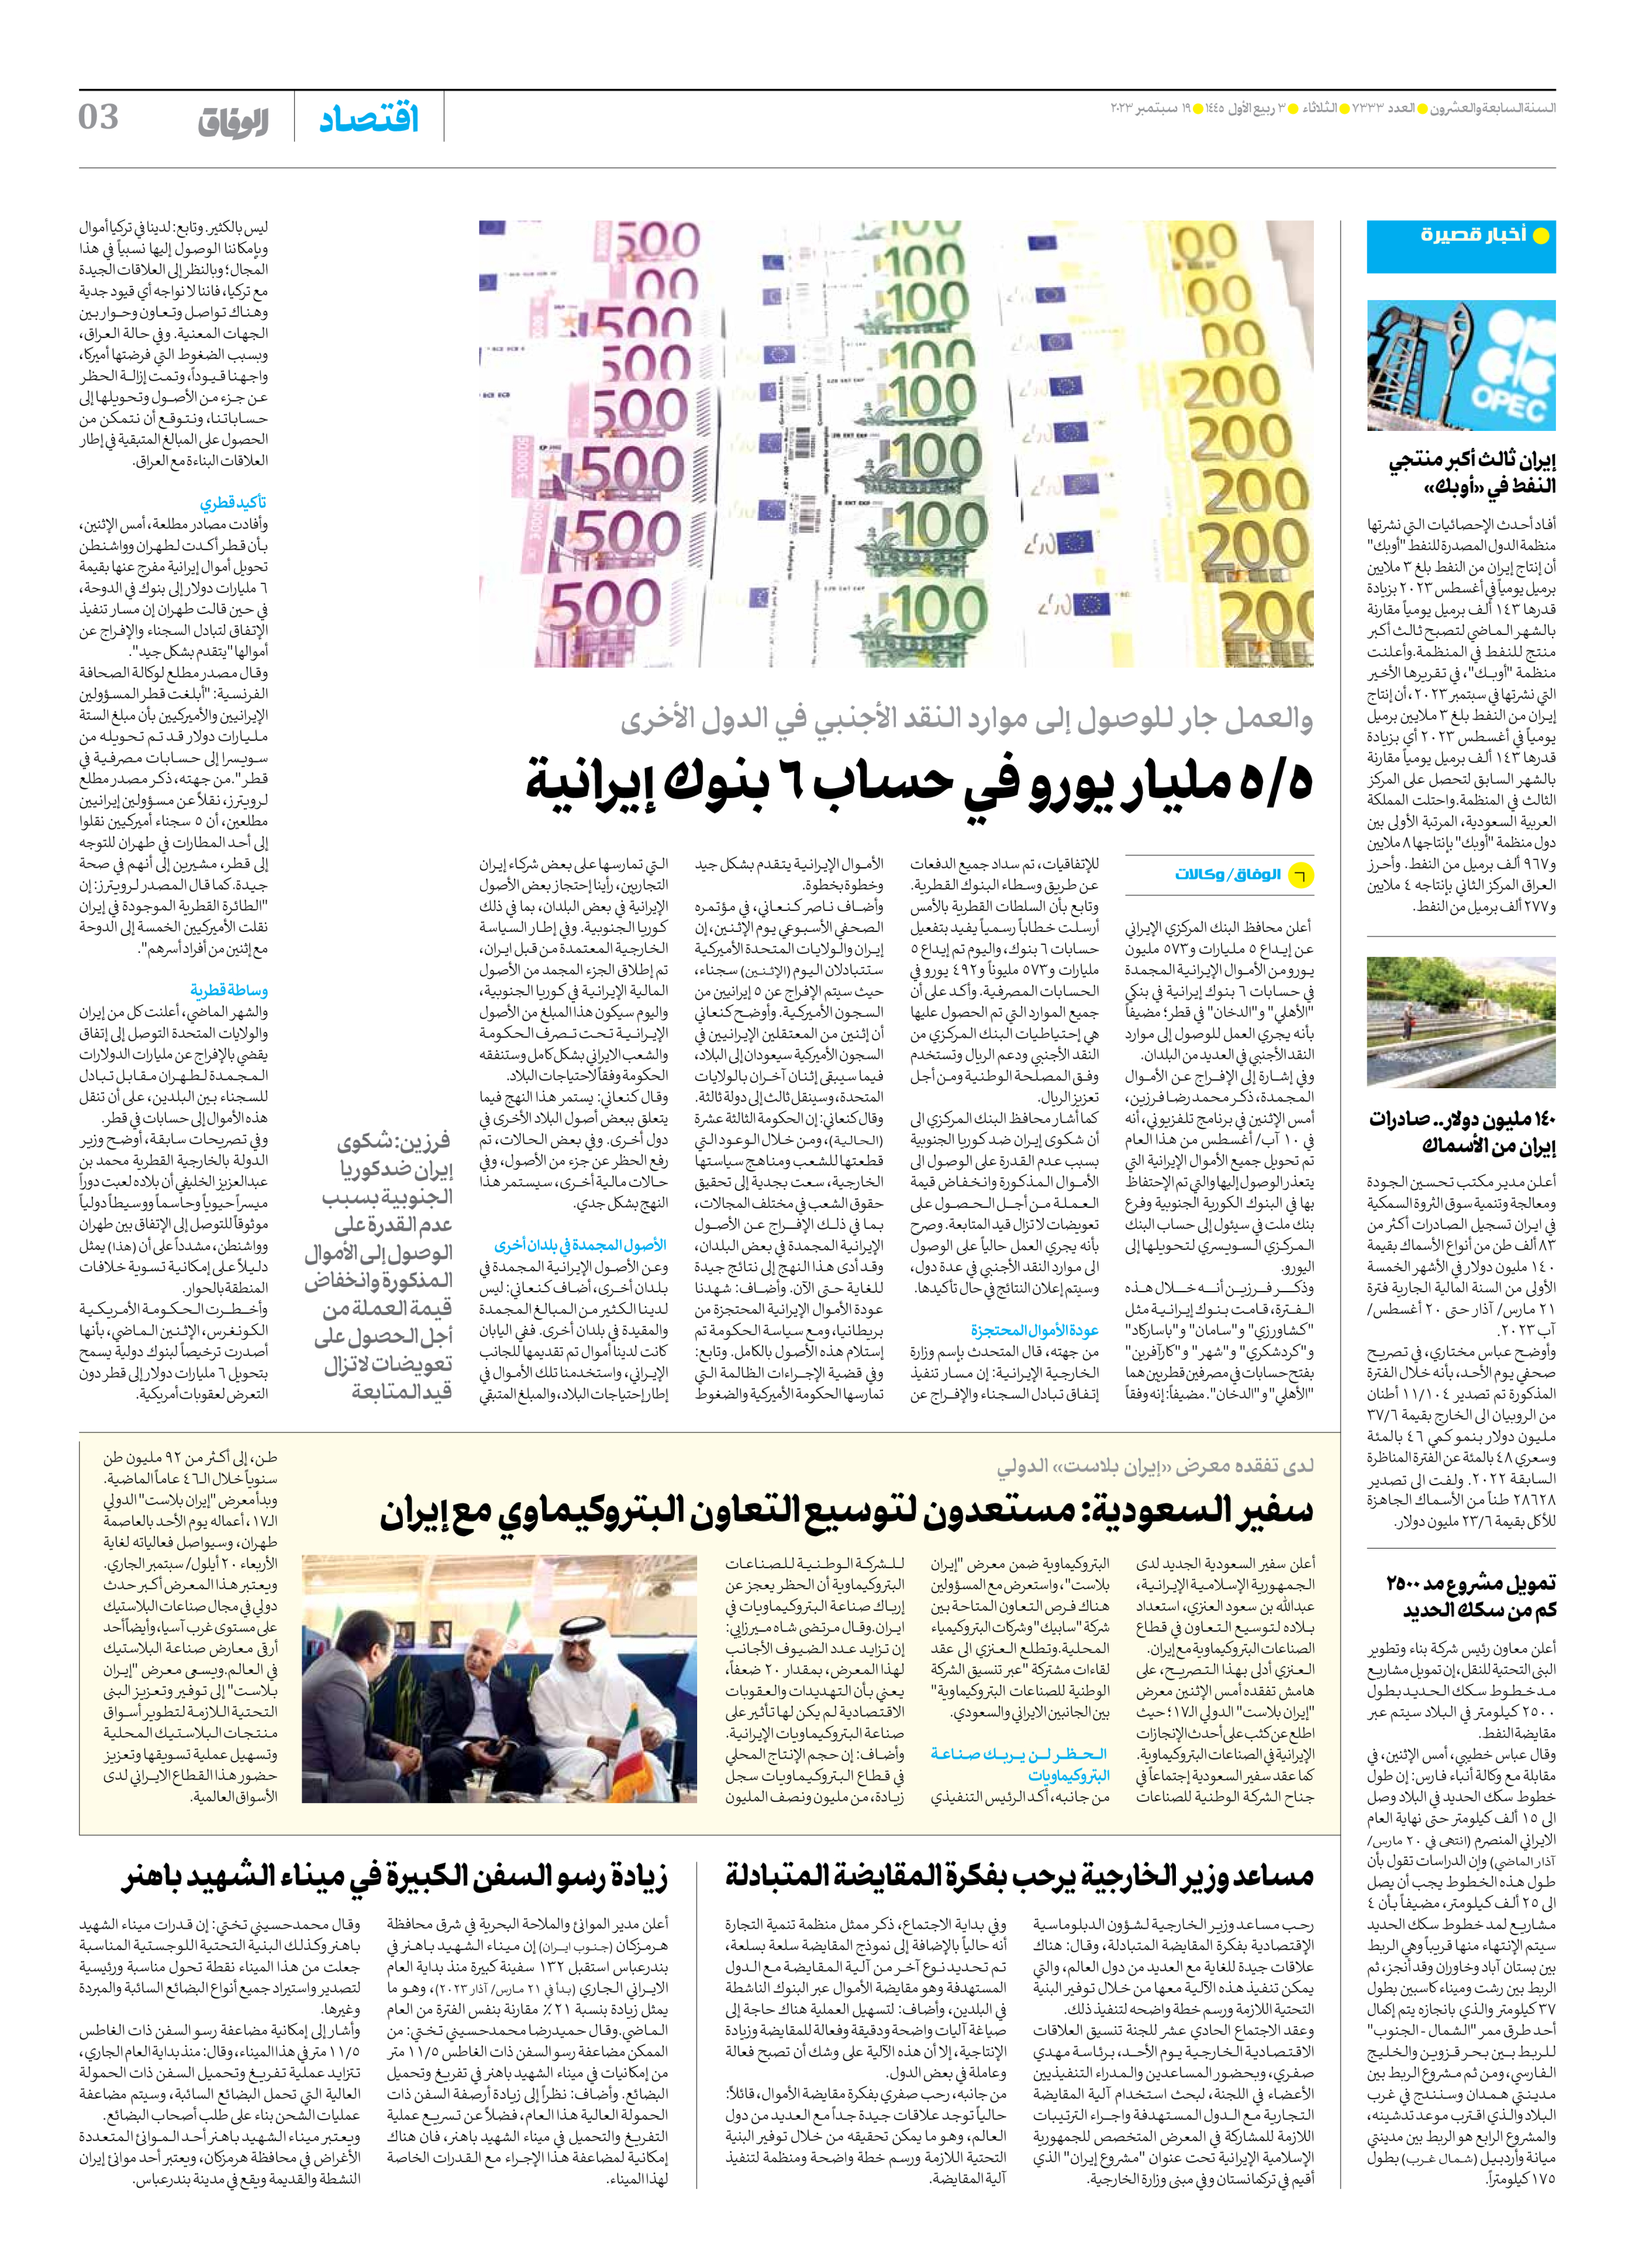 صحیفة ایران الدولیة الوفاق - العدد سبعة آلاف وثلاثمائة وثلاثة وثلاثون - ١٩ سبتمبر ٢٠٢٣ - الصفحة ۳